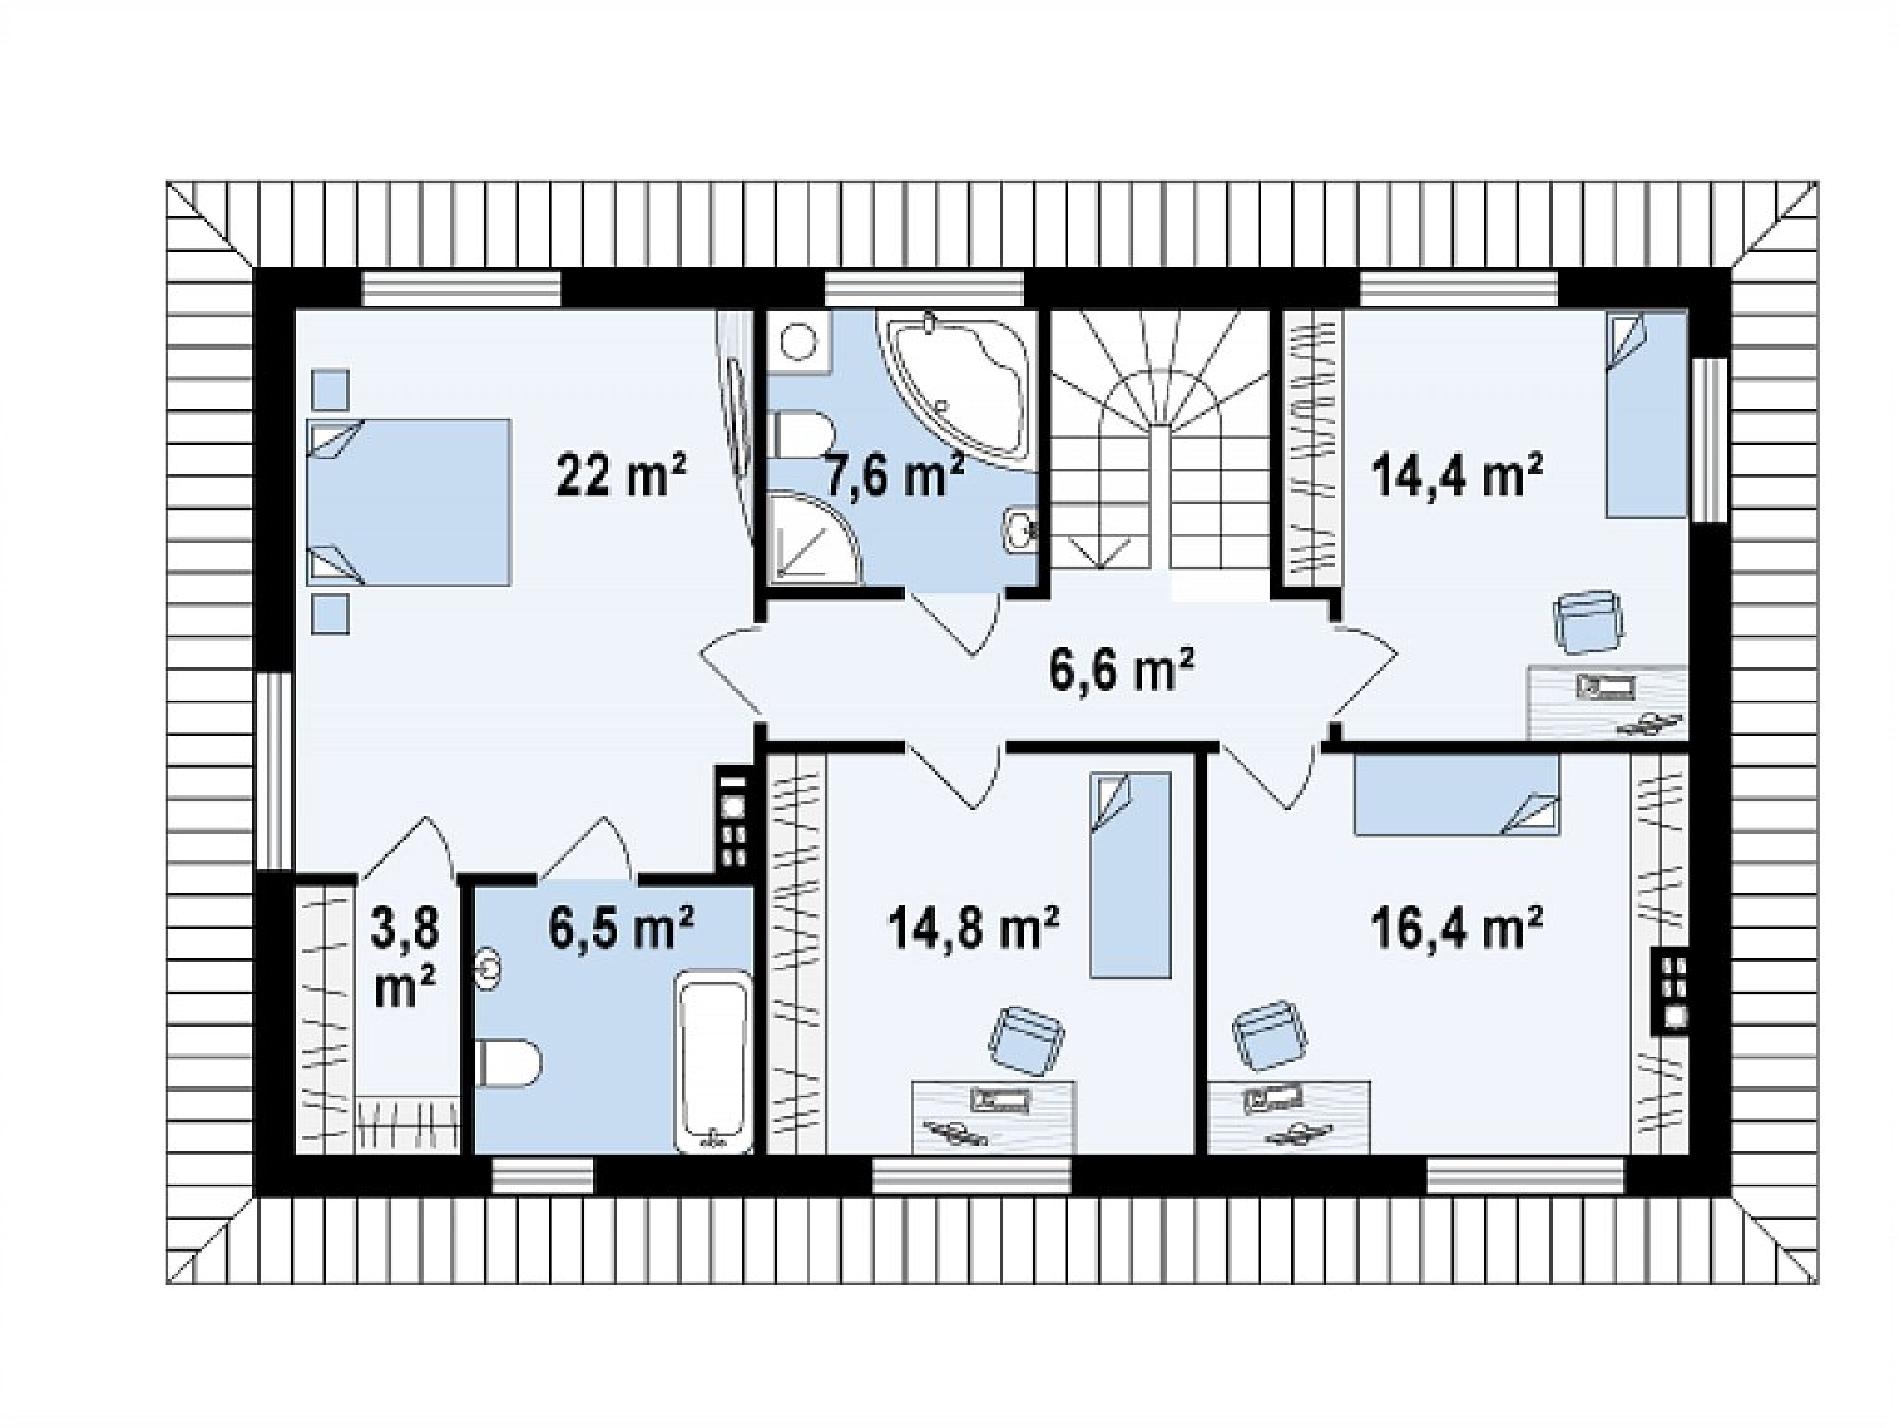 Дом 4 комнаты 2 этажа. Проекты прямоугольных домов. Планировка 2 этажа с 2 спальнями. Планировки второго этажа с тремя спальнями. Проект дома с 2 спальнями на первом этаже.